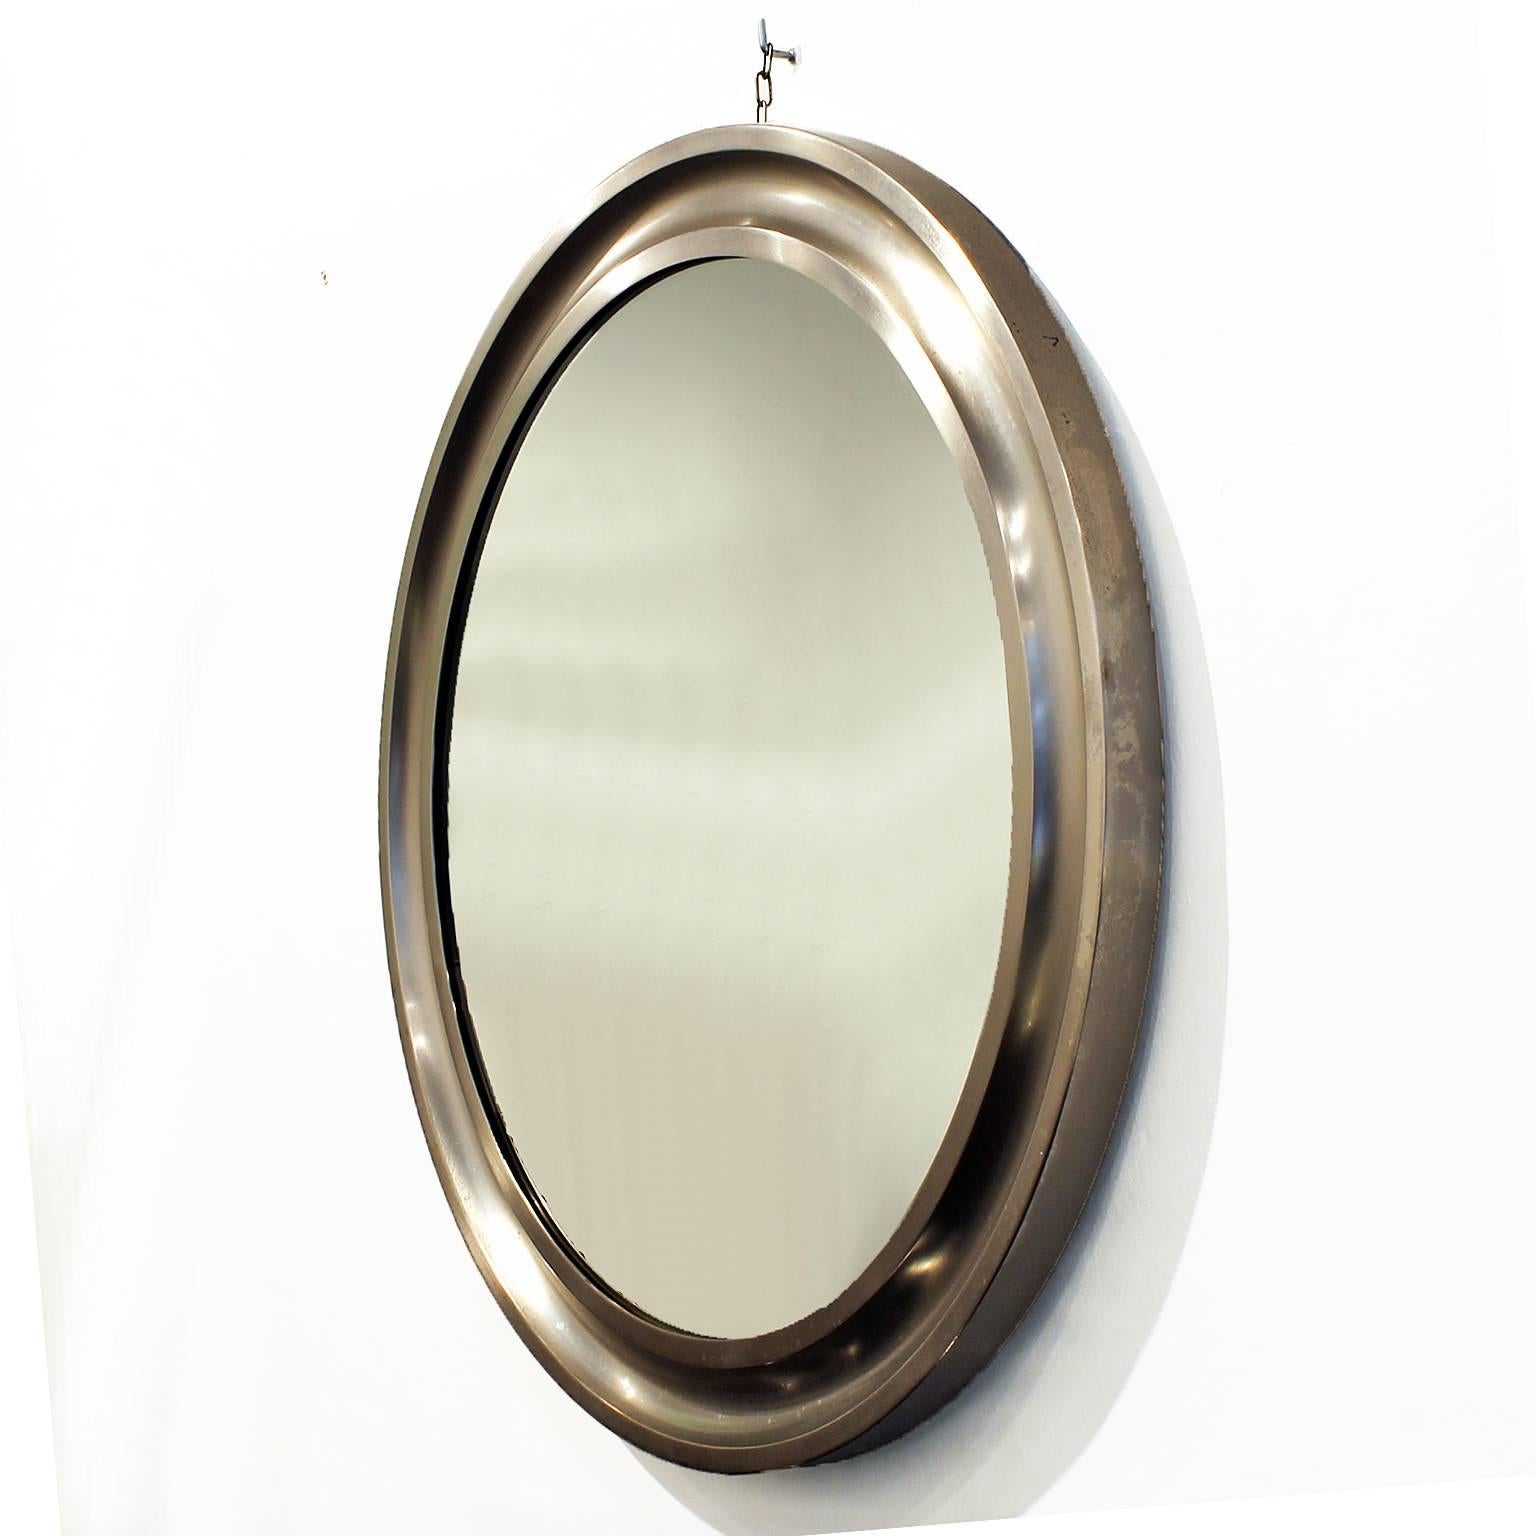 Miroir rond, cadre en aluminium moulé brossé.
Design/One : Sergio Mazza pour Artemide

Italie, vers 1960.